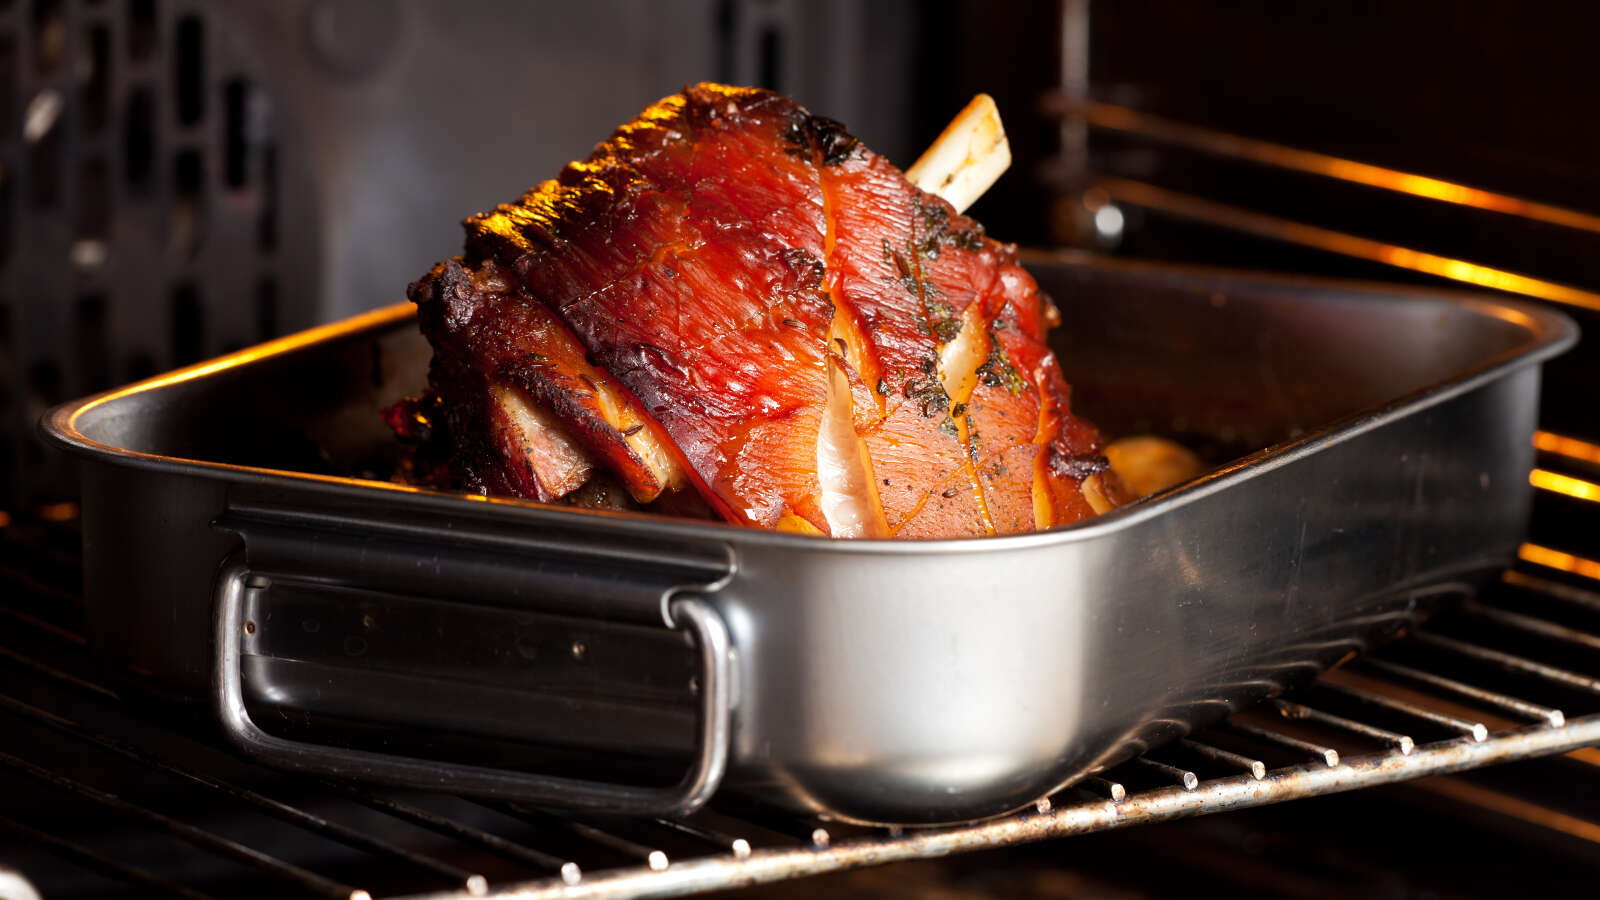 Cuire la viande au four à basse température, comment s'y prendre ?